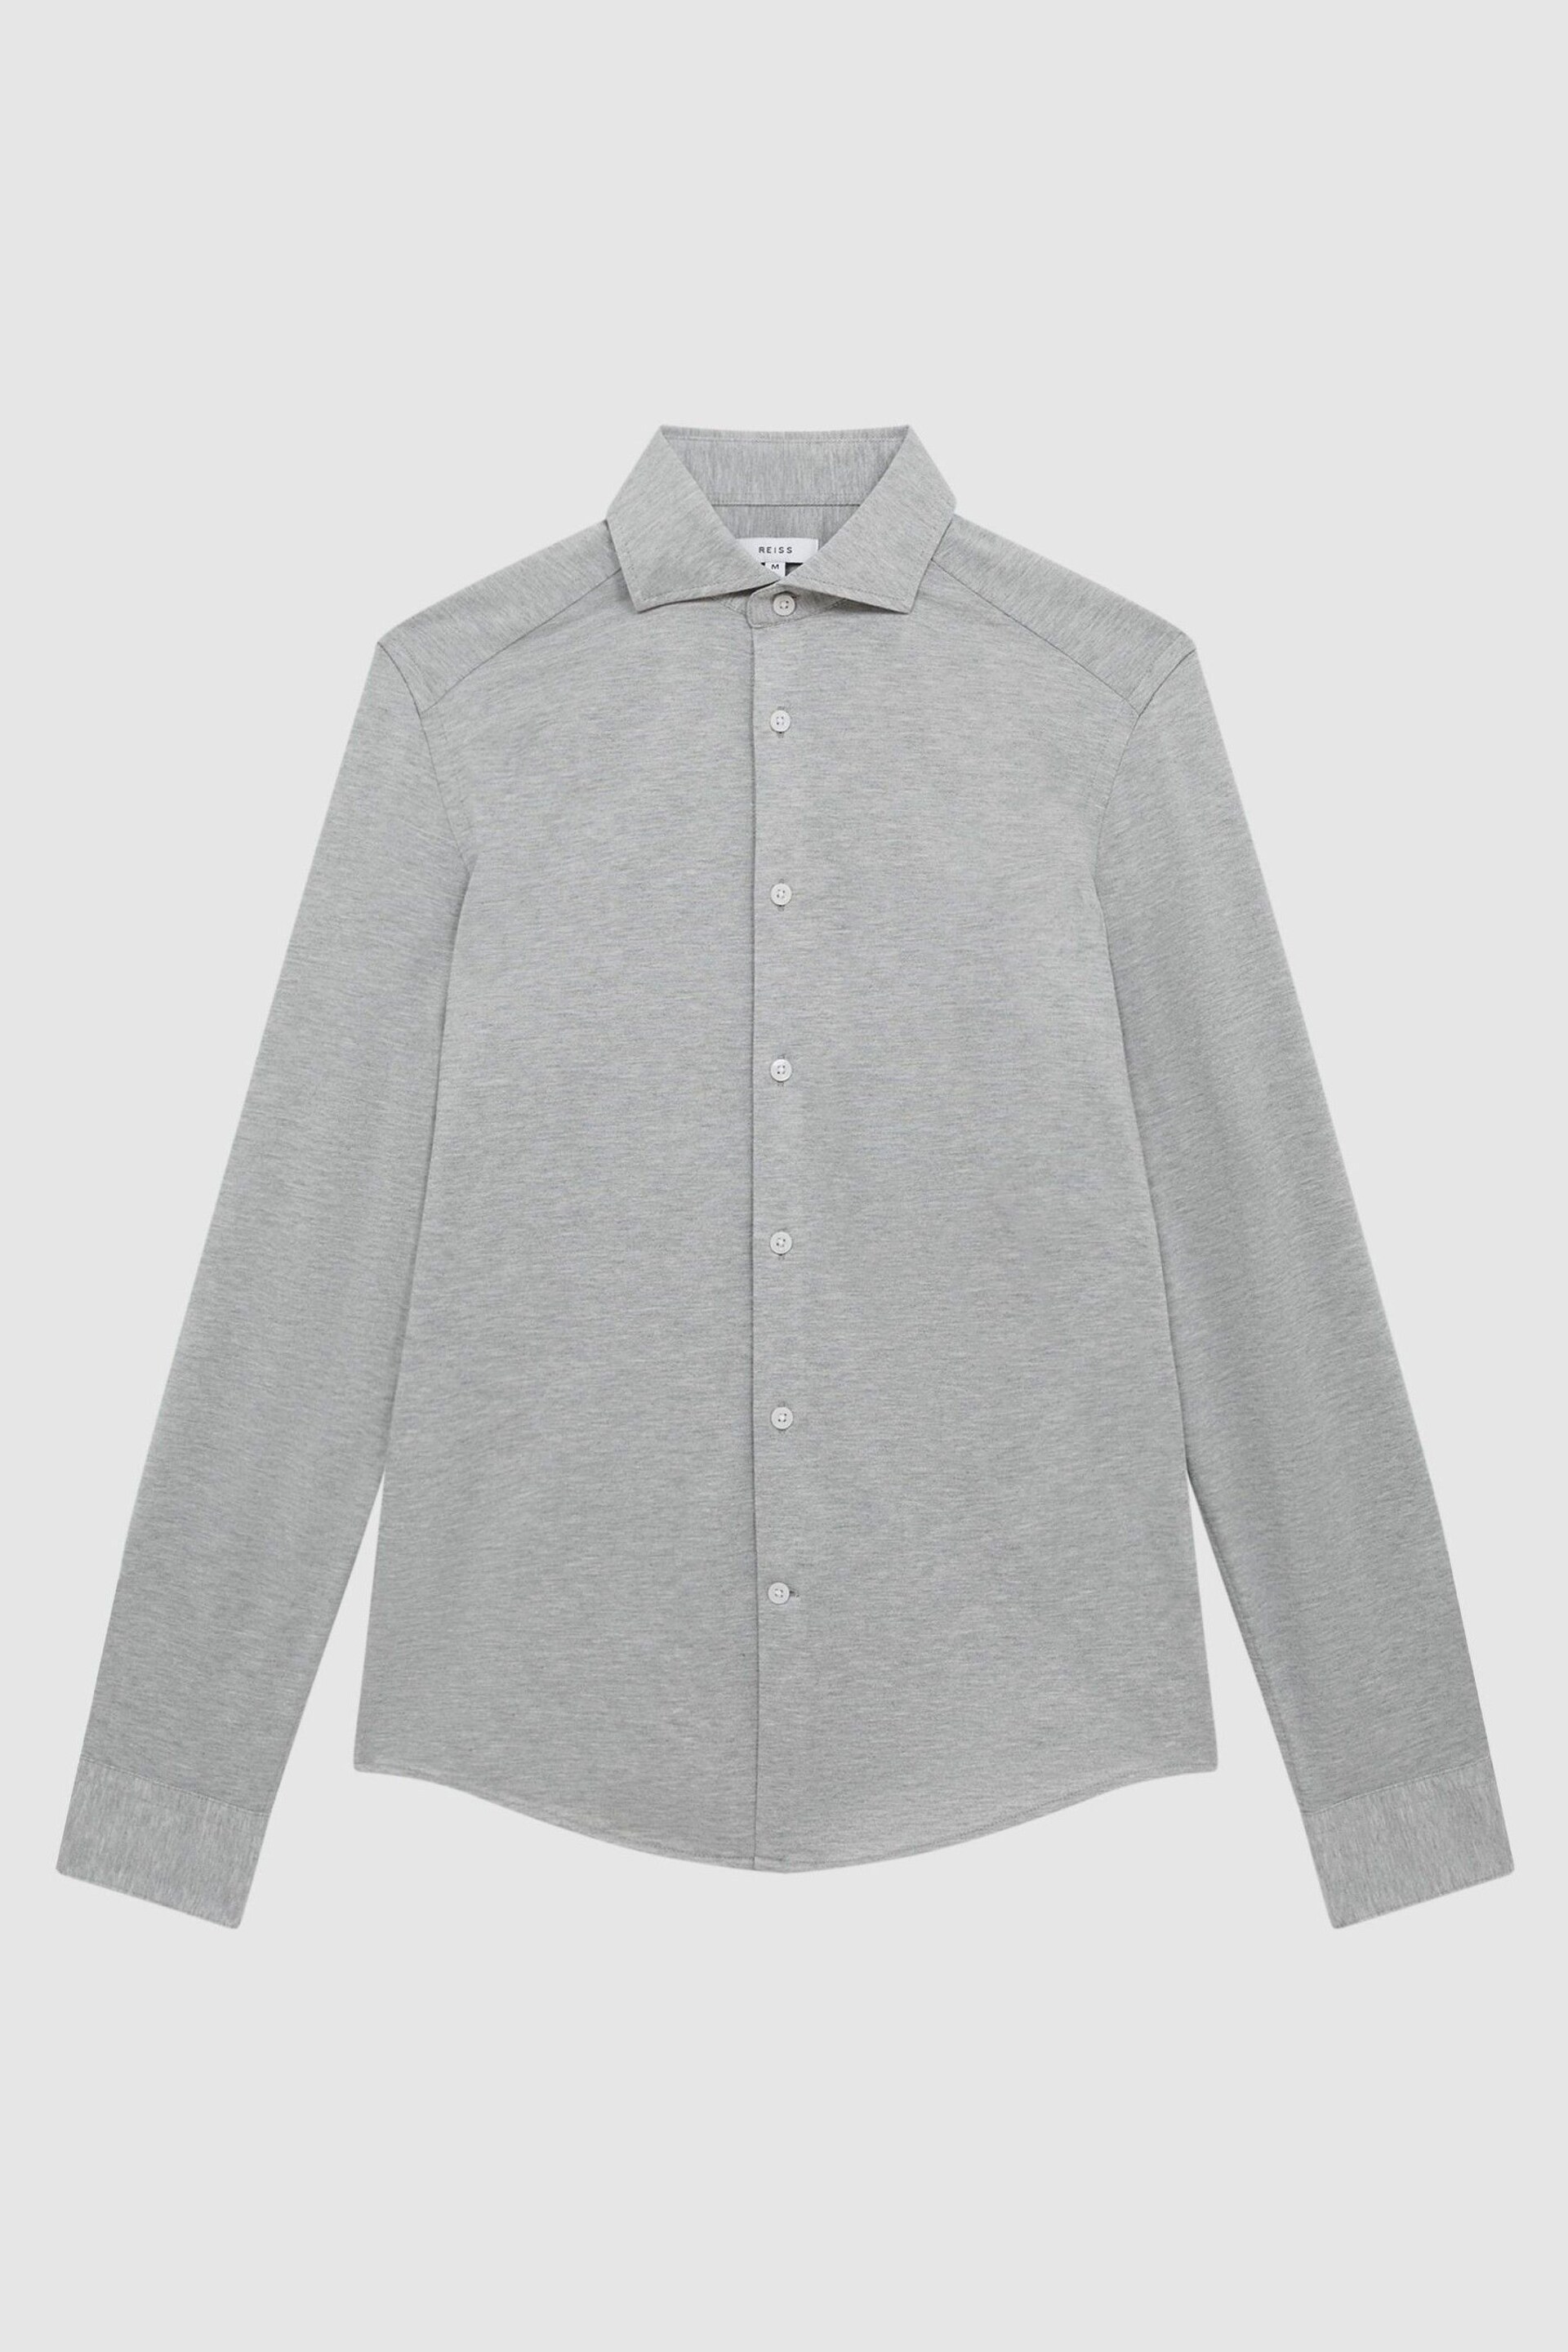 Reiss Grey Melange Nate Cutaway Collar Jersey Slim Fit Shirt - Image 2 of 6